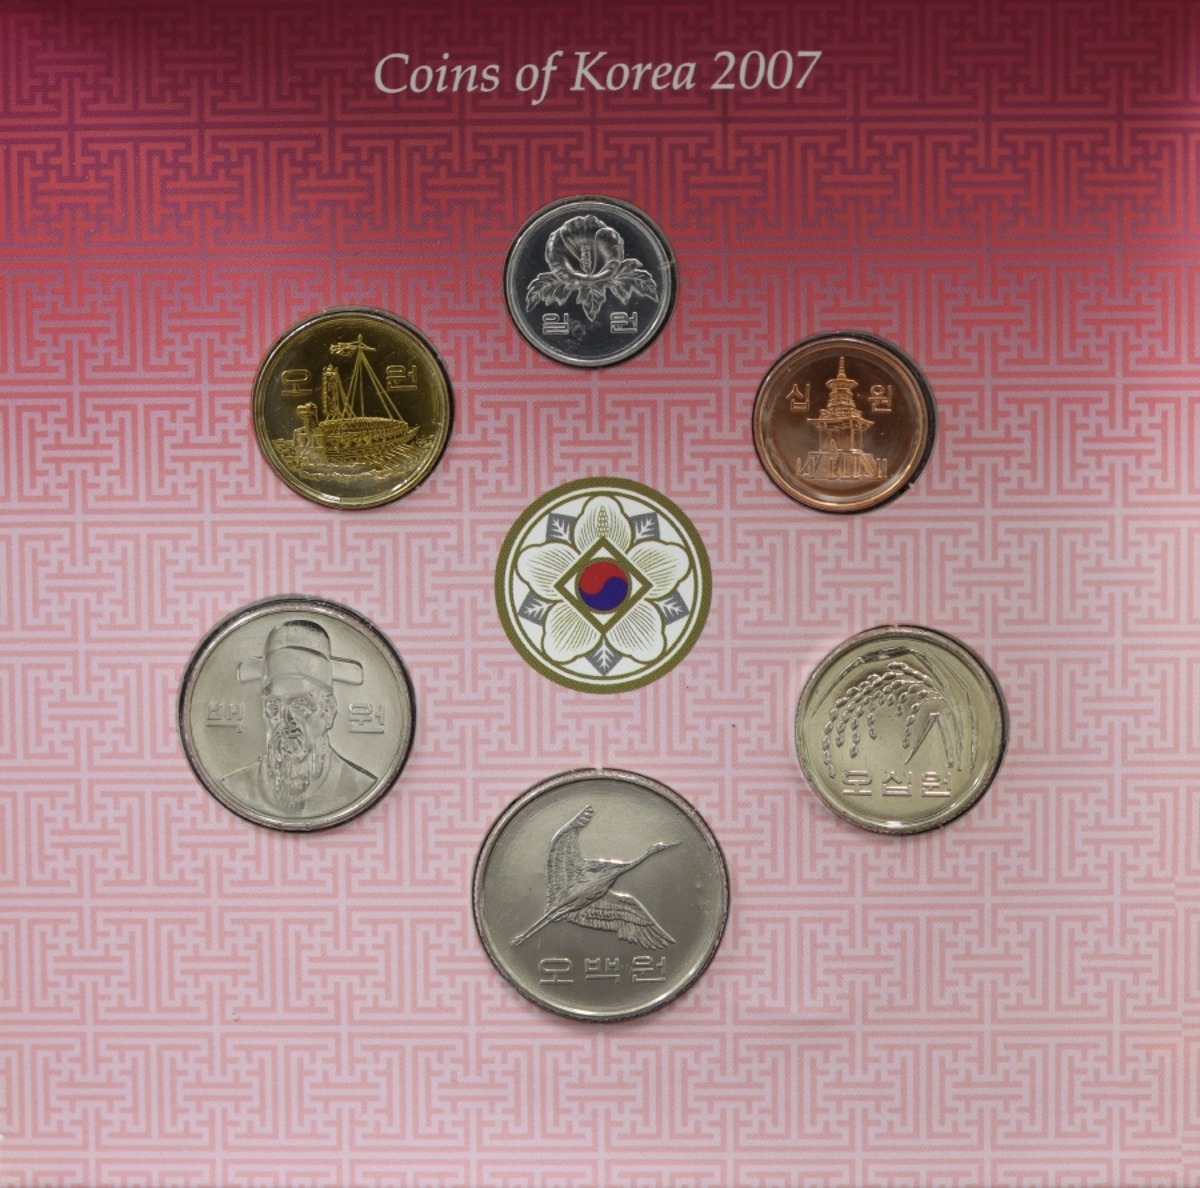 한국 2007년 현용주화 민트 세트 - 해외증정용